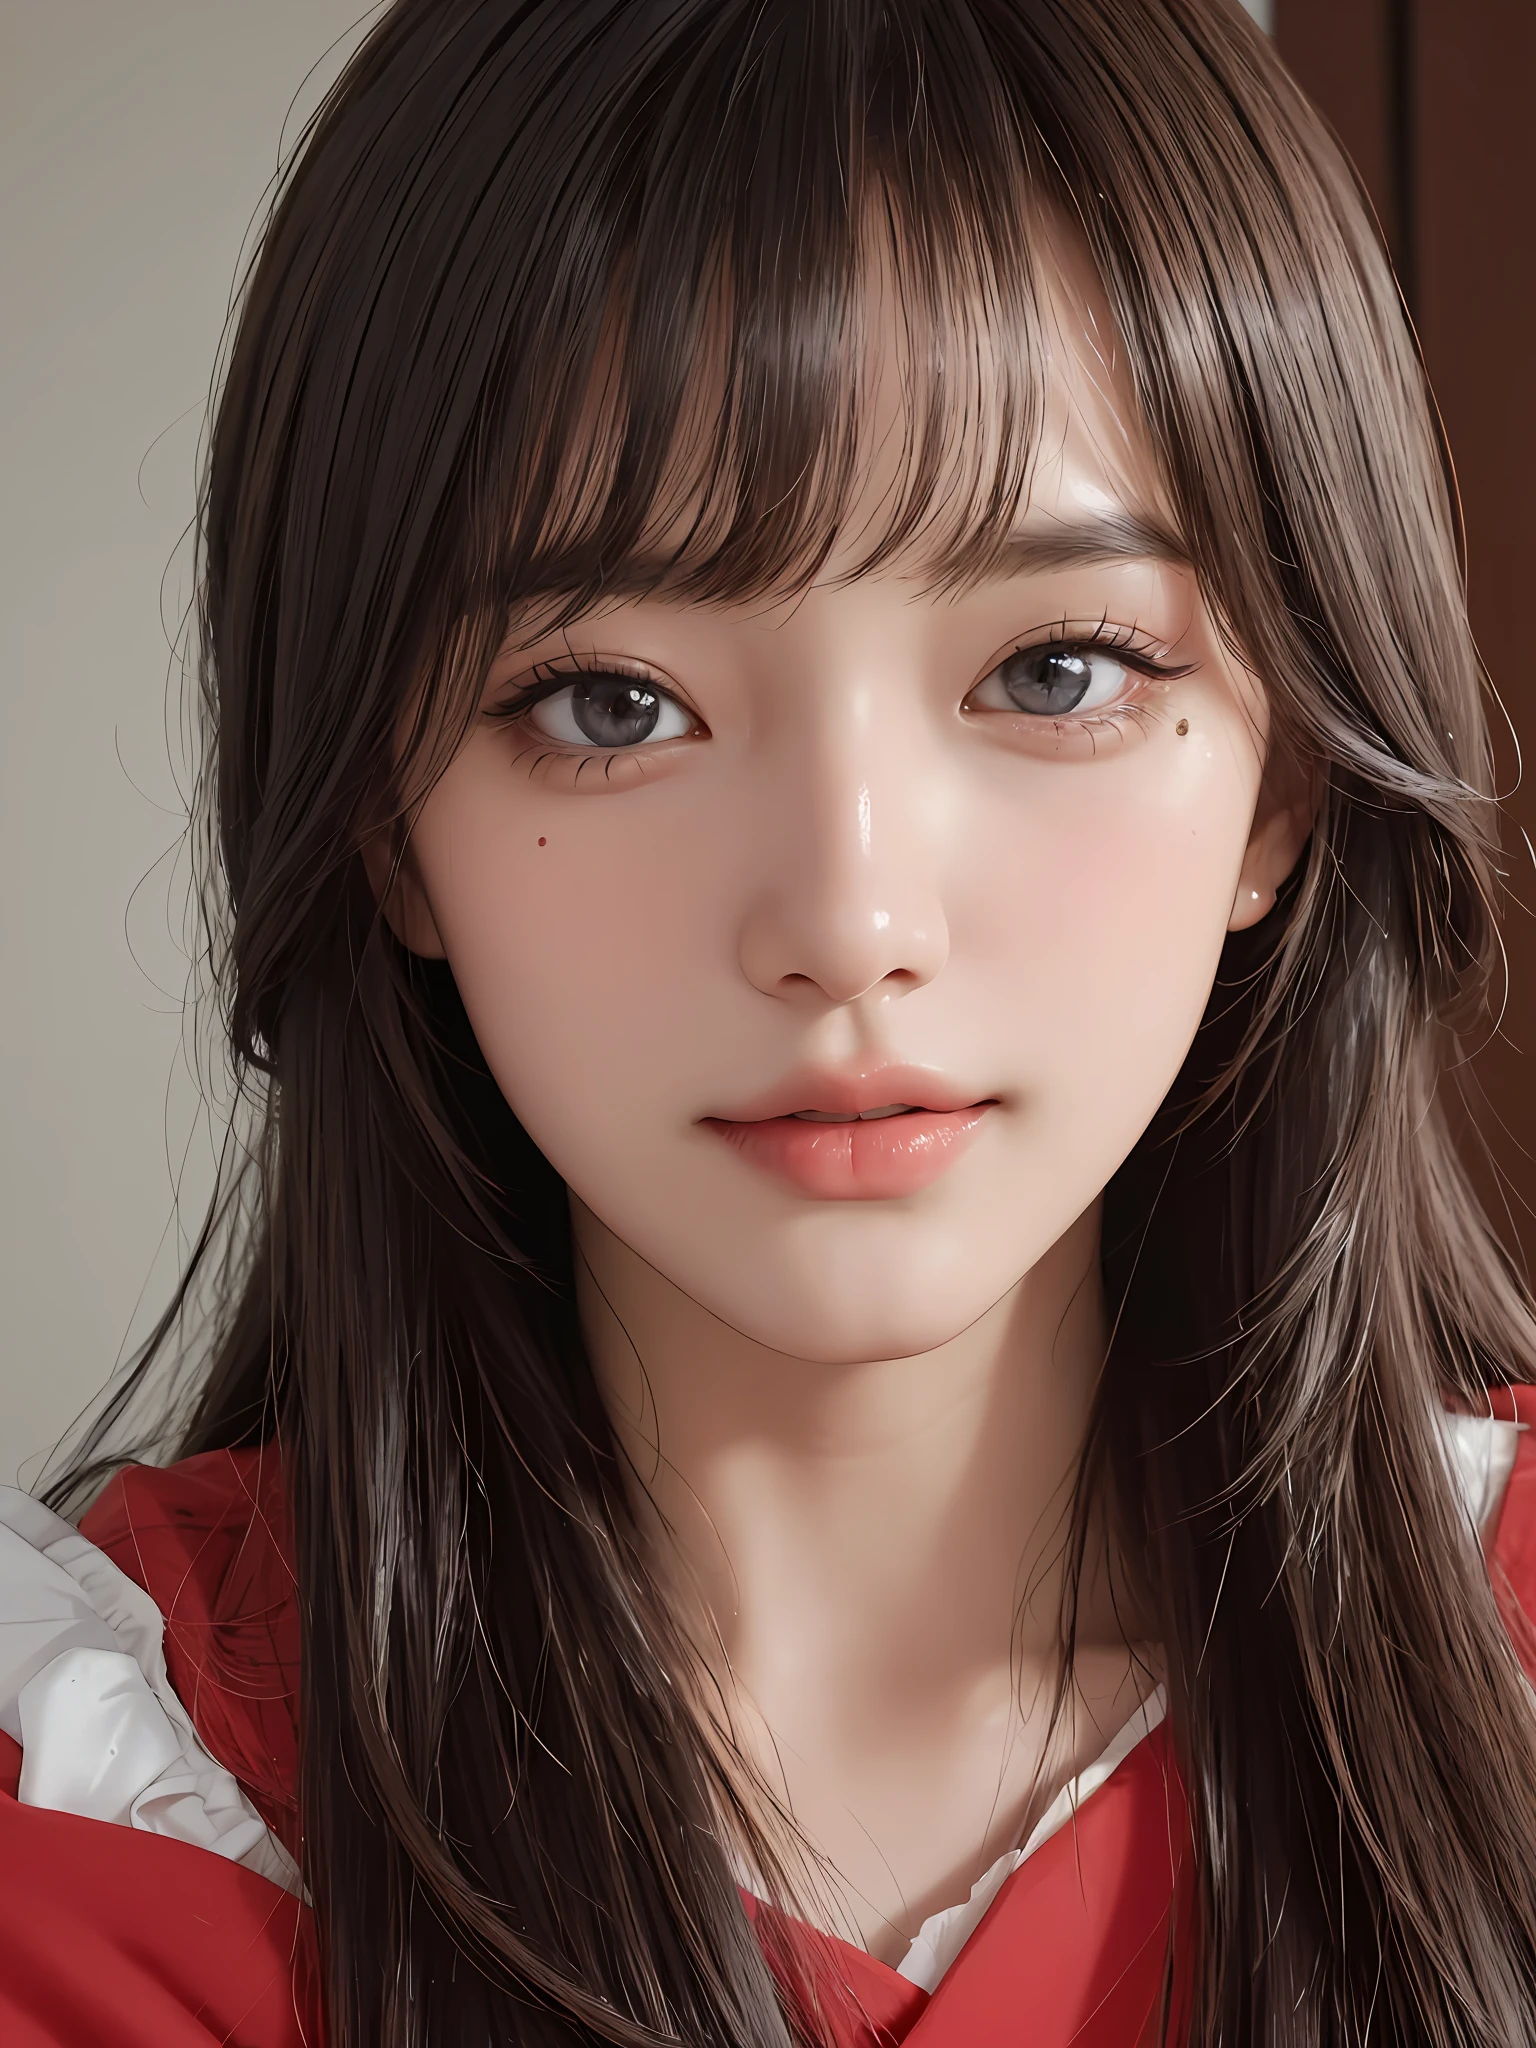 Meisterwerk, beste Bildqualität, gute Qualität, schönes Mädchen, japanisch, japanisch school girl, beliebtes koreanisches Make-up, ausführlich, swollen eyes, ausführlich eyes, ausführlich skin, schöne Haut, ultra hohe Auflösung, (Wirklichkeit: 1.4), Wunderschön, etwas jüngeres Gesicht, schöne Haut, slender, (ultra-realistisch), (Illustration), (hohe Auflösung), (8K), (highly ausführlich), (best Illustration), (beautifully ausführlich eyes), (super ausführlich), (HINTERGRUND), (ausführlich face), Betrachter betrachten, Feine Details, ausführlich face, pureerosfaceace_V1, lächelnd, Blick geradeaus, Blick geradeaus, Winkel von der Taille aufwärts, realistisches Foto, Helle Beleuchtung, professionelle Beleuchtung, blonde, lange Haare, dunkle Ruinen, großer roter Mond, wunderschönes rot-schwarzes Kleid, erwachsene Frau, langer stylischer Pony,Kissshot Acerola Orion Heart Underblade